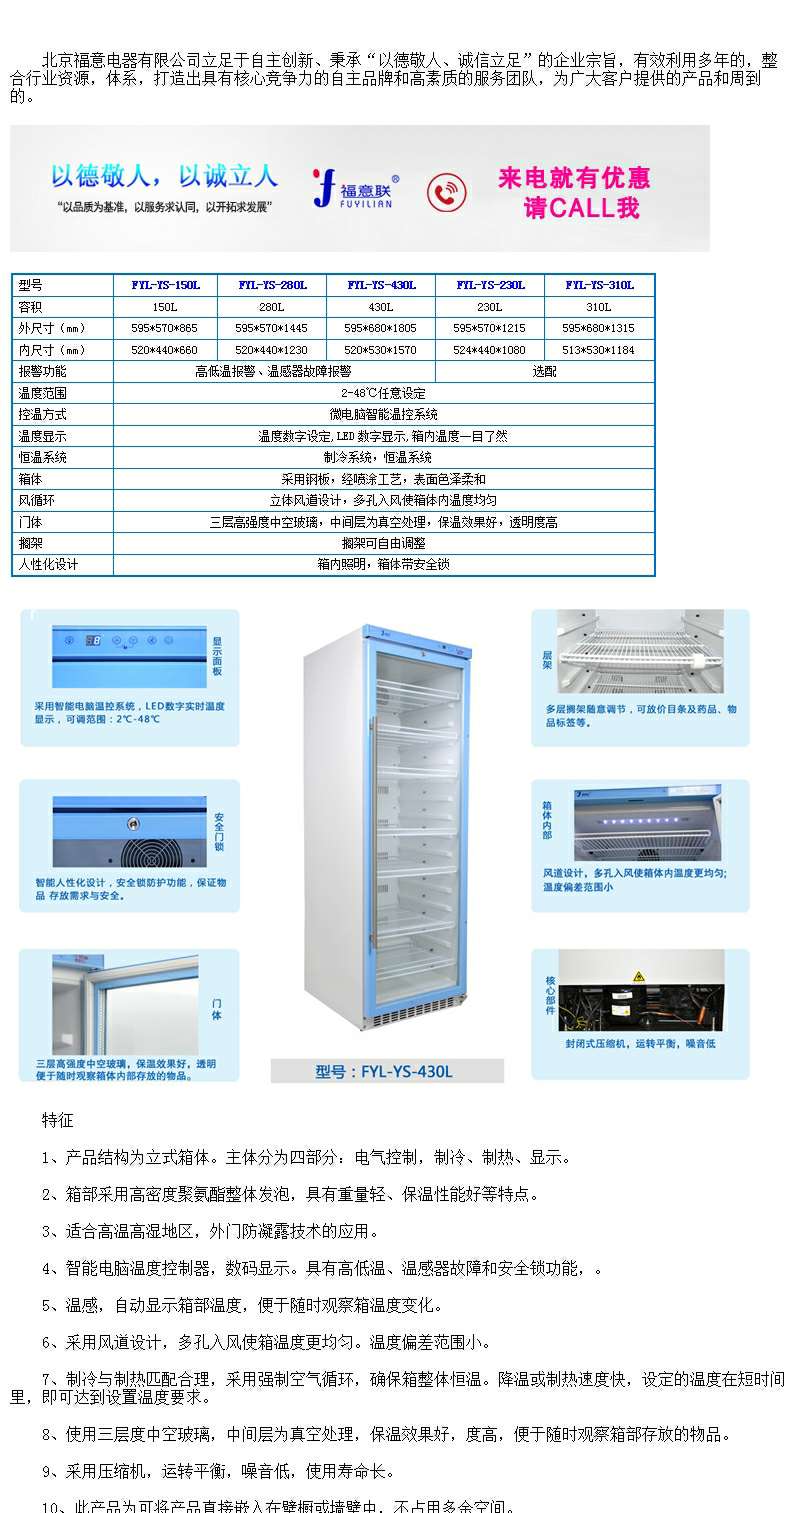 内嵌式冷藏箱-4度至8度冷藏箱75L